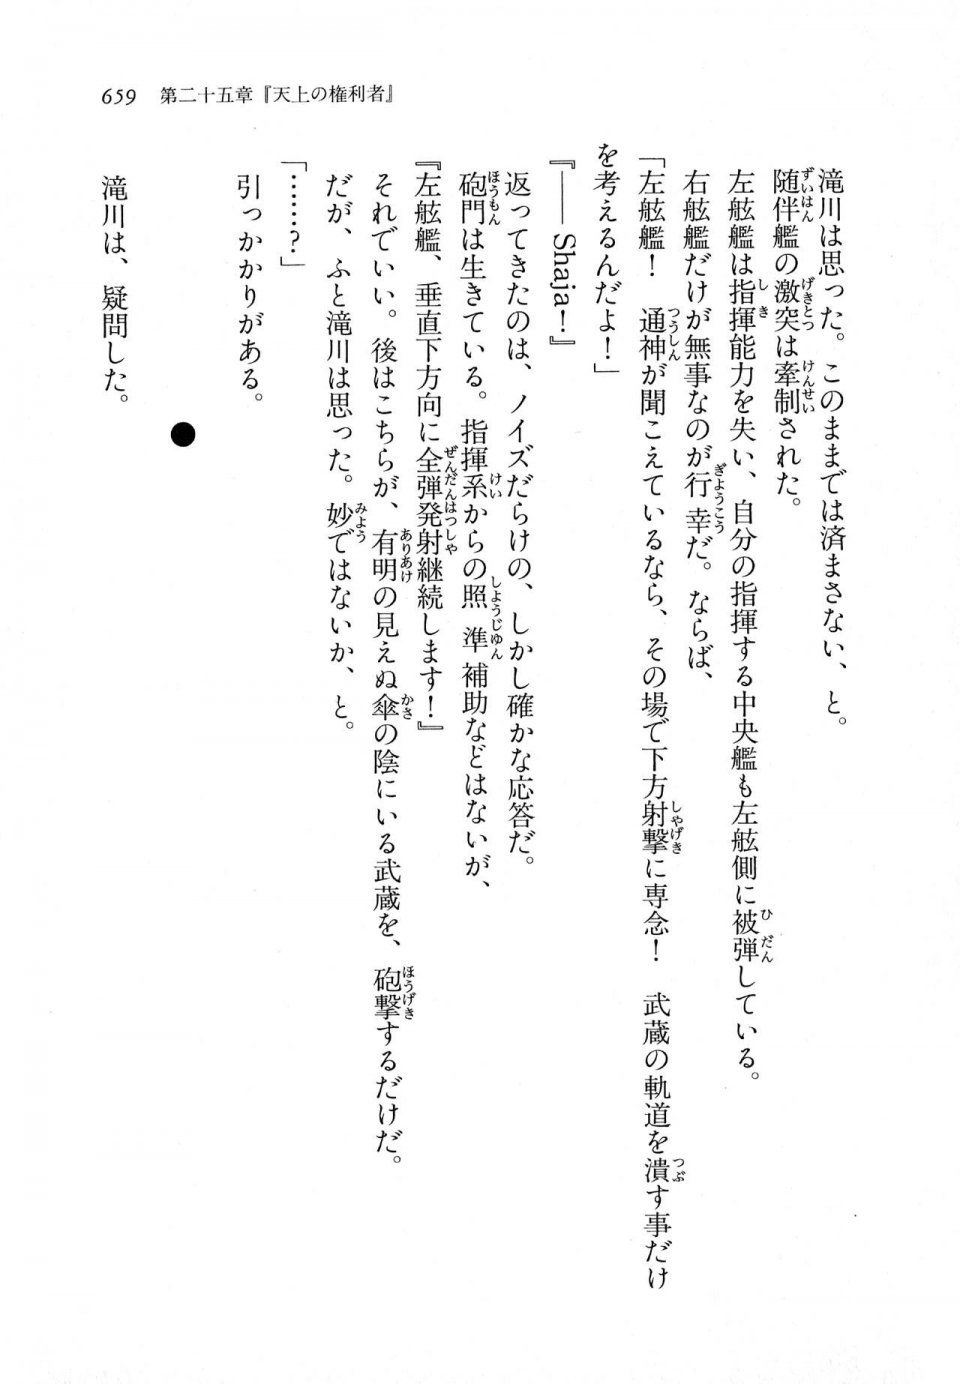 Kyoukai Senjou no Horizon LN Vol 11(5A) - Photo #659